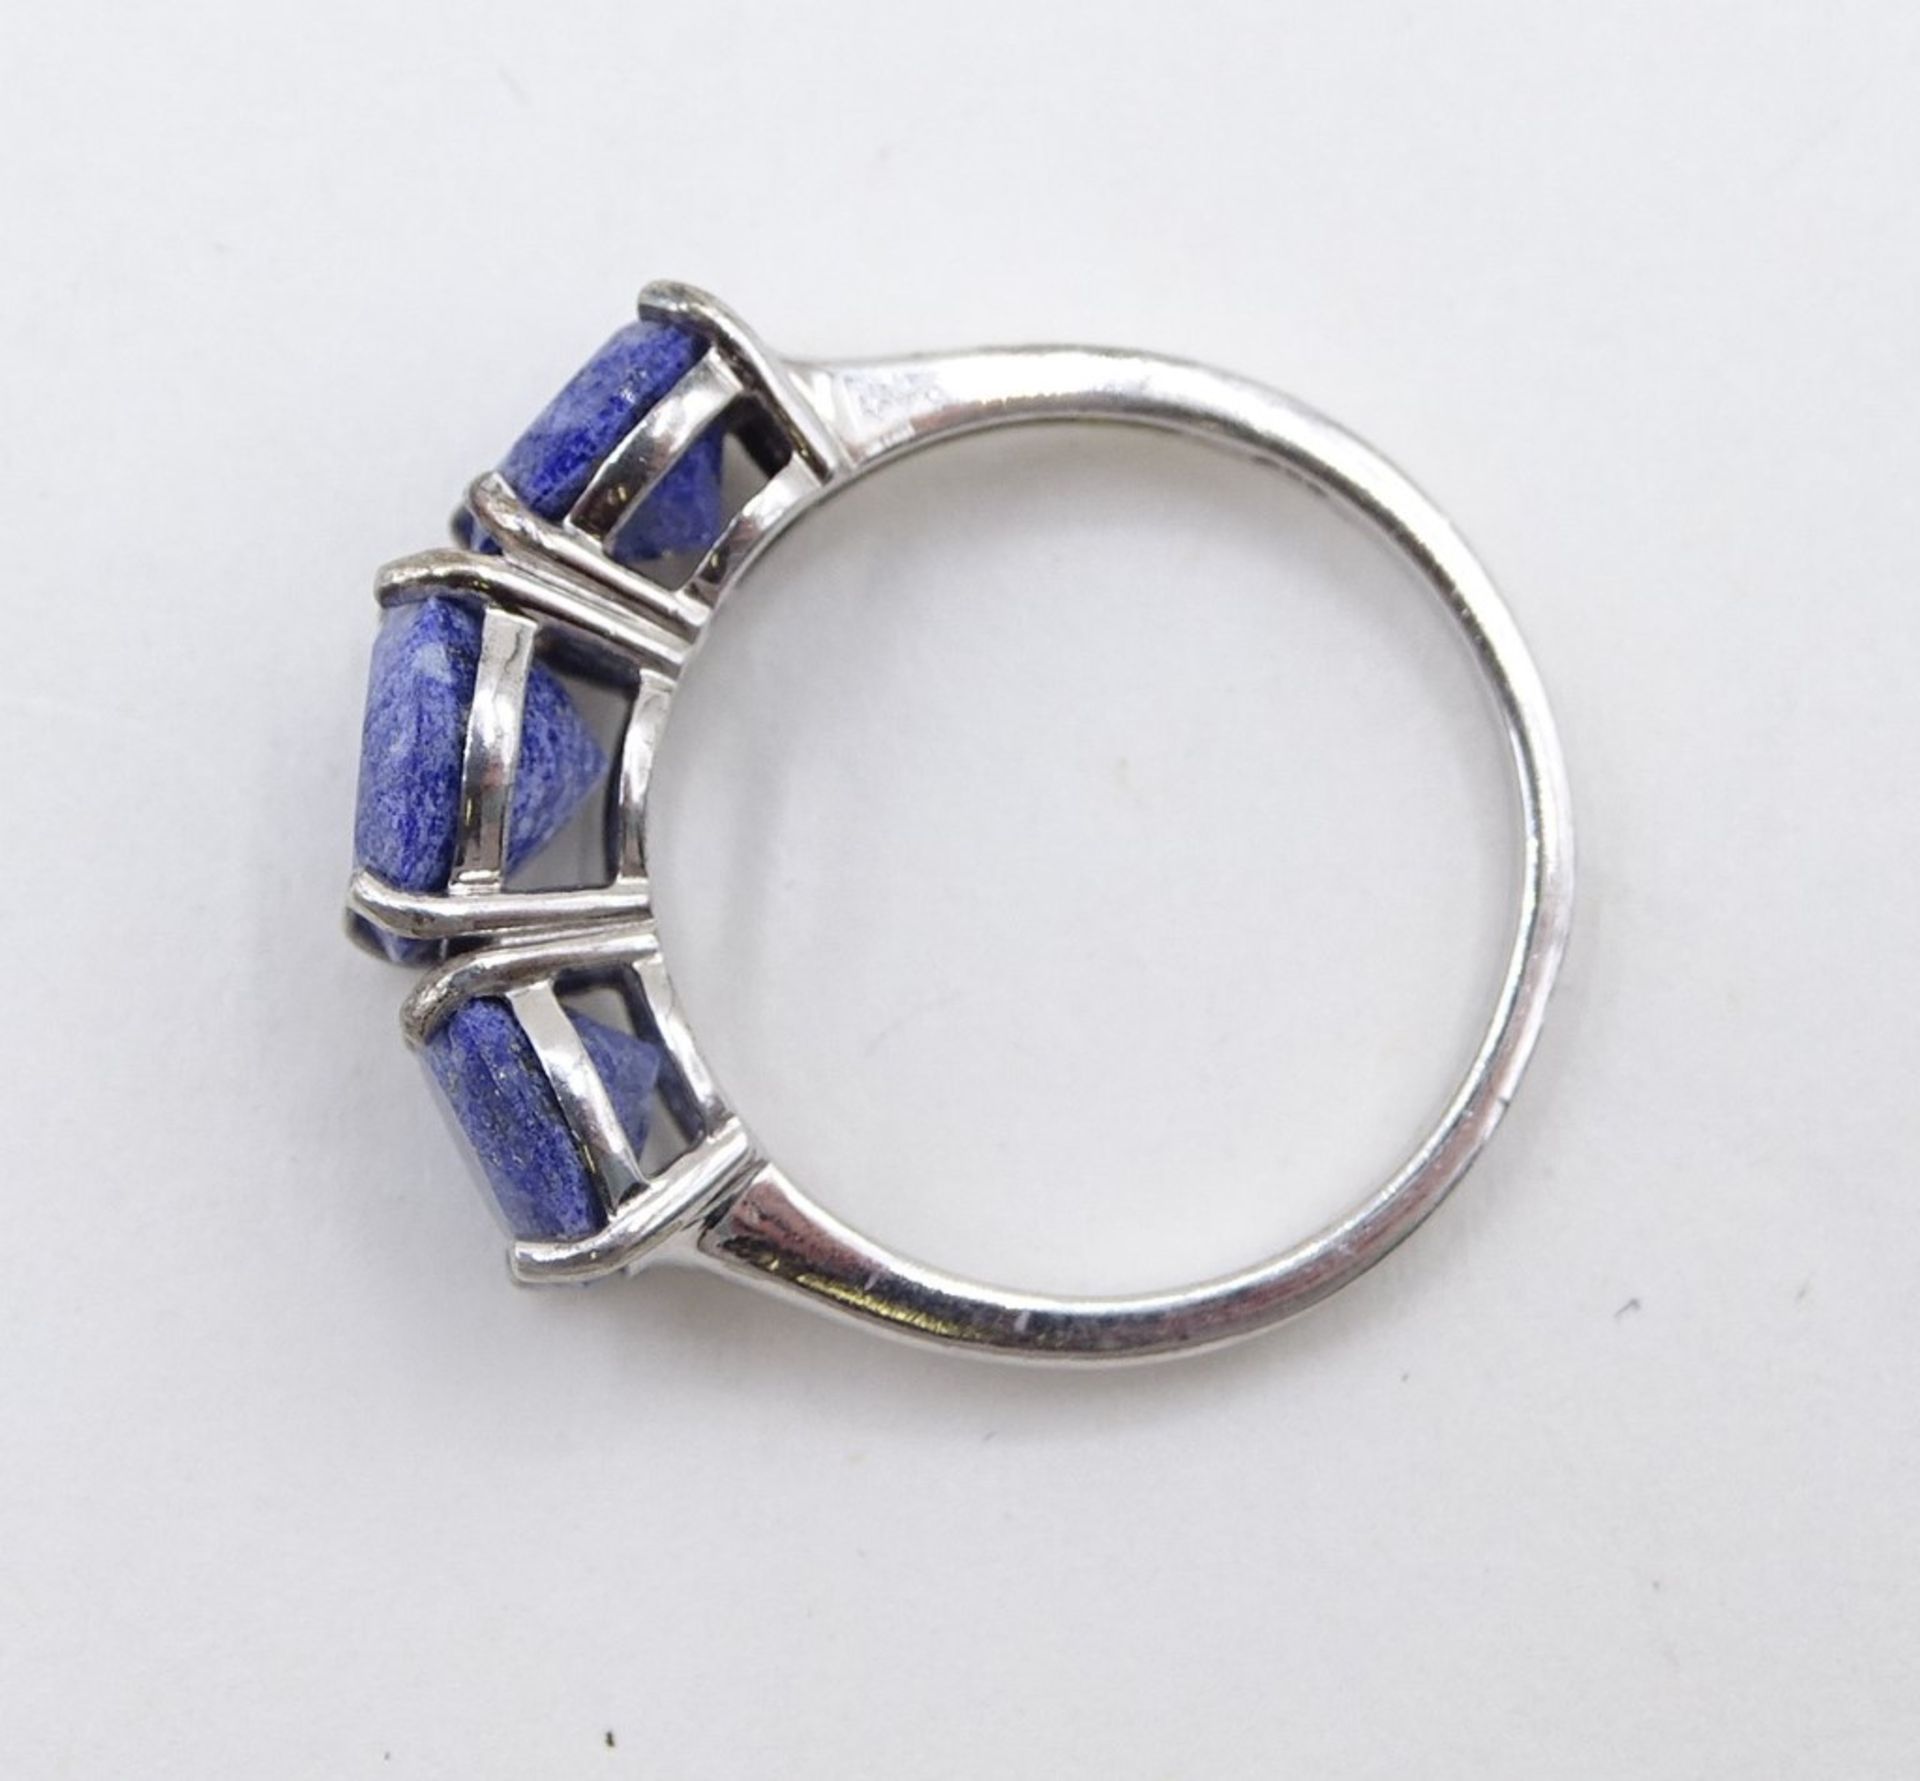 925er-Silberring mit 3 blau-weißen fac. Steinen, RG 55, 2,9 gr. - Image 4 of 4